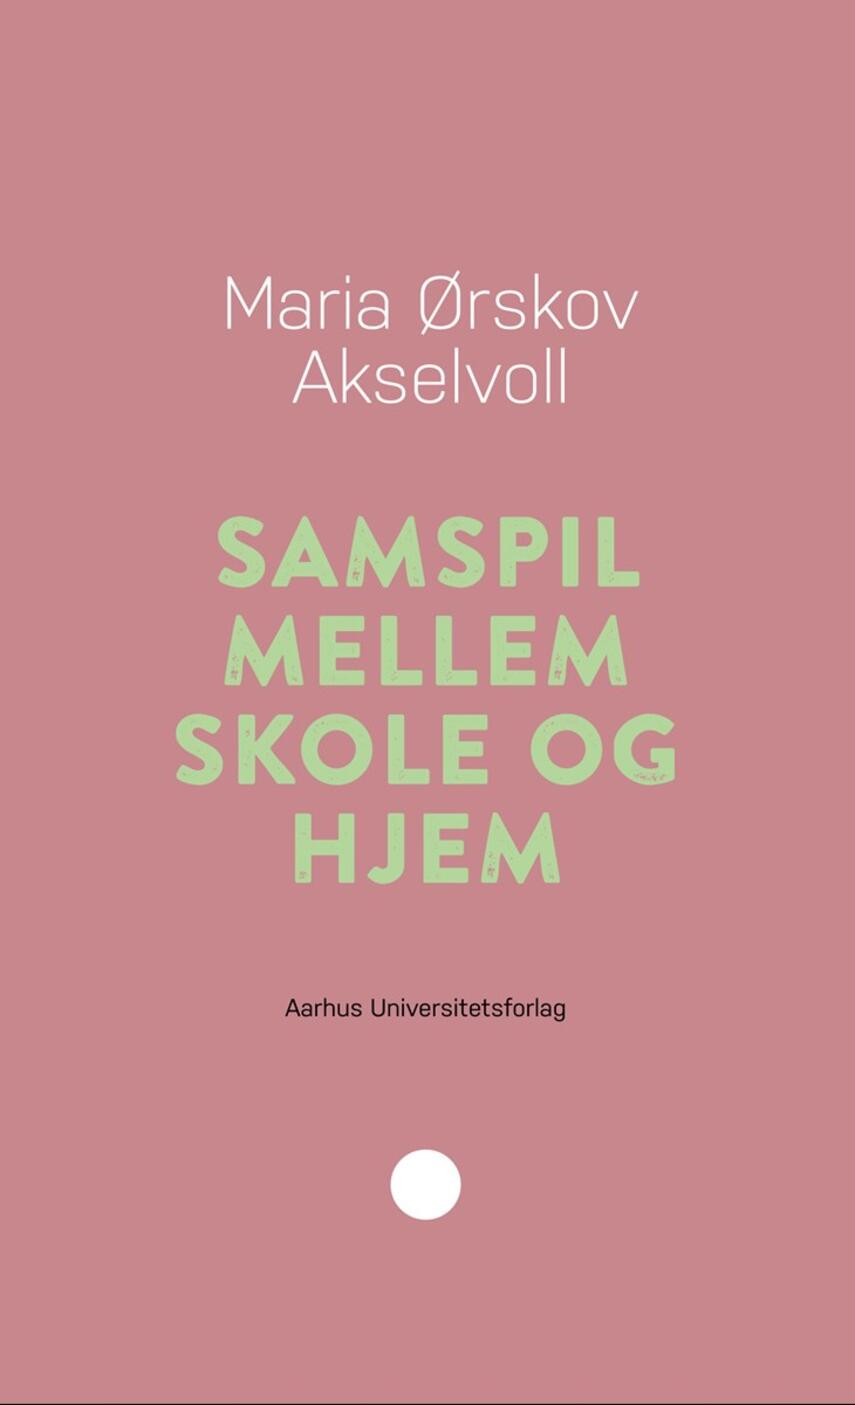 Maria Ørskov Akselvoll: Samspil mellem skole og hjem